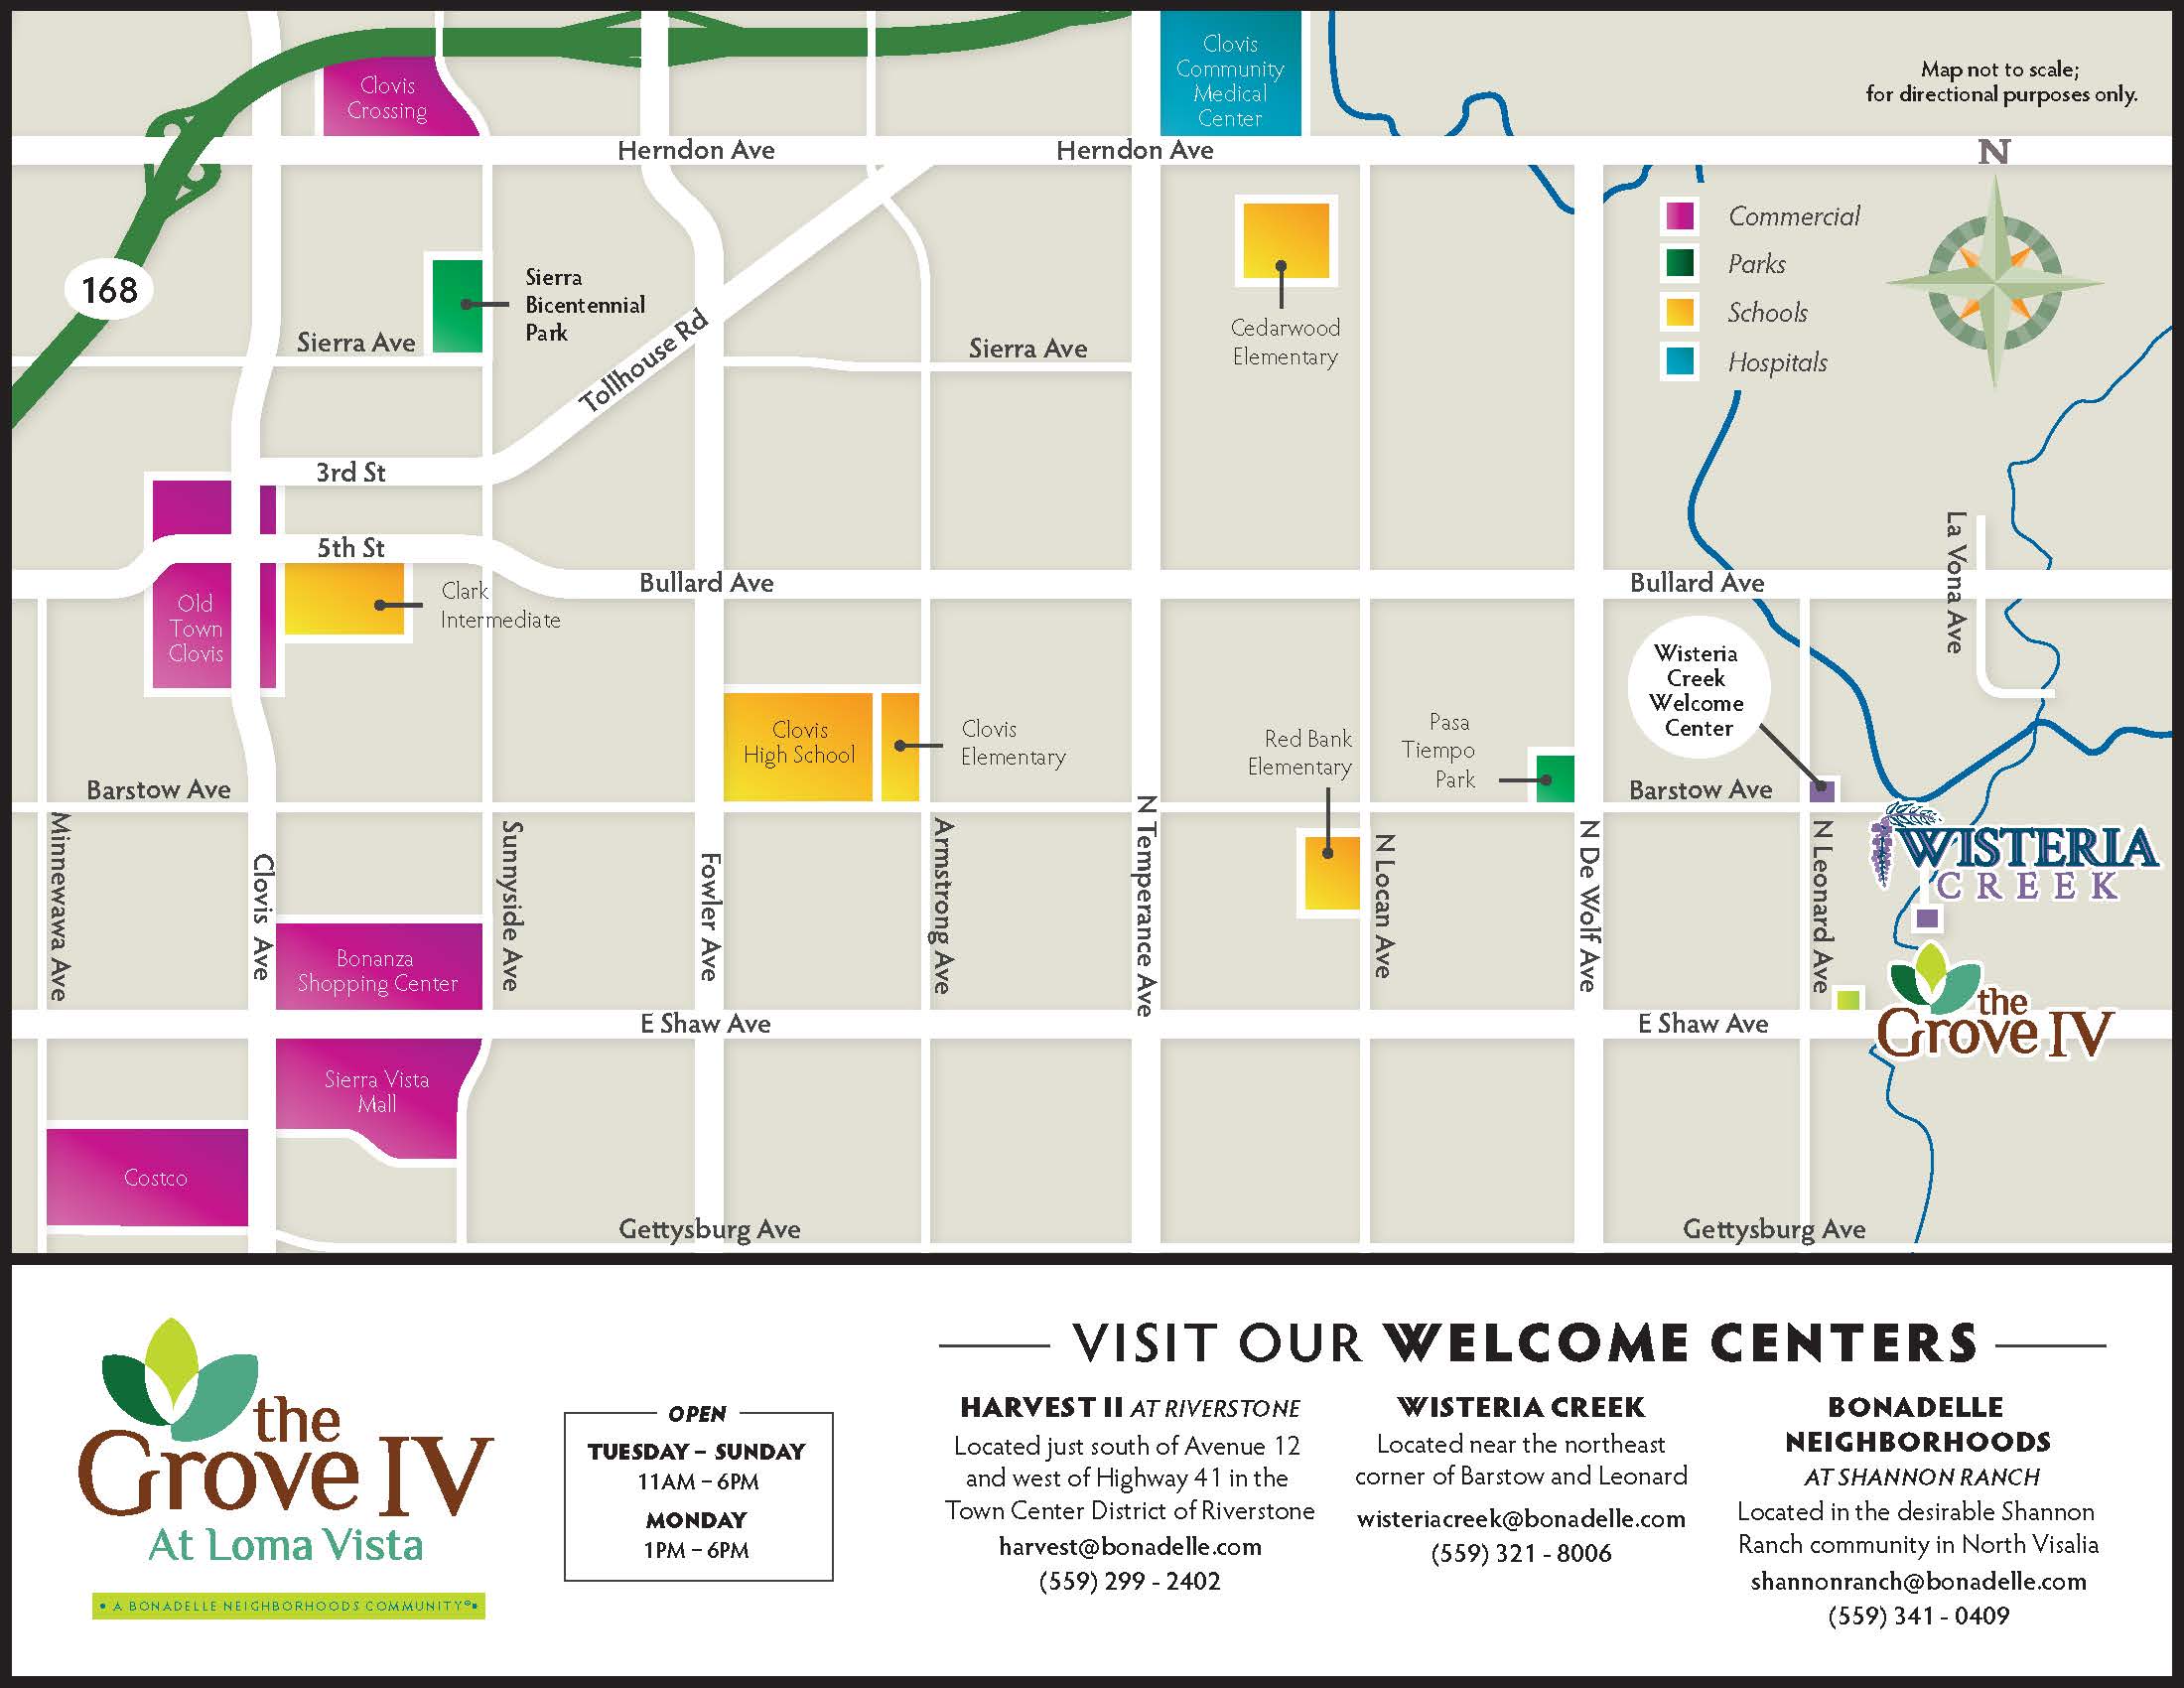 The Grove IV at Loma Vista Area Map